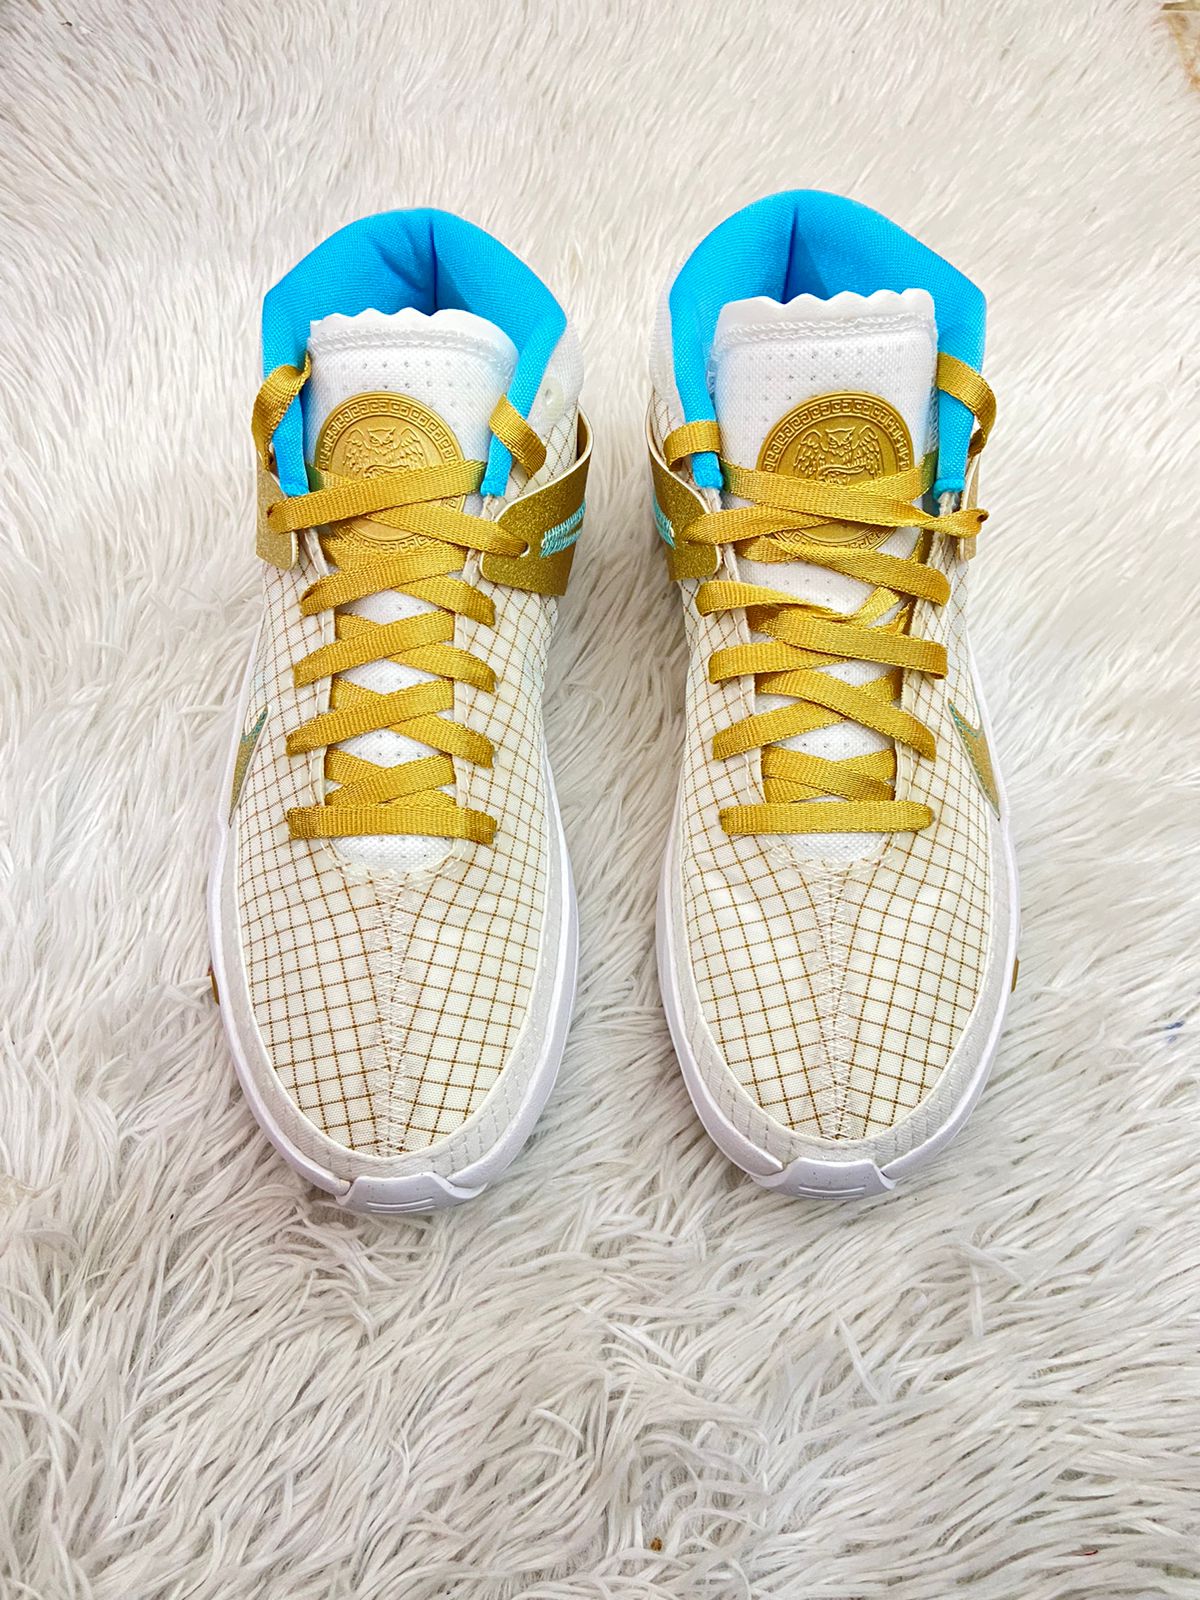 Tenis Nike original, altos blanco con dorado y rayas, con logotipo de la marca y cordones en dorado y azul por dentro.